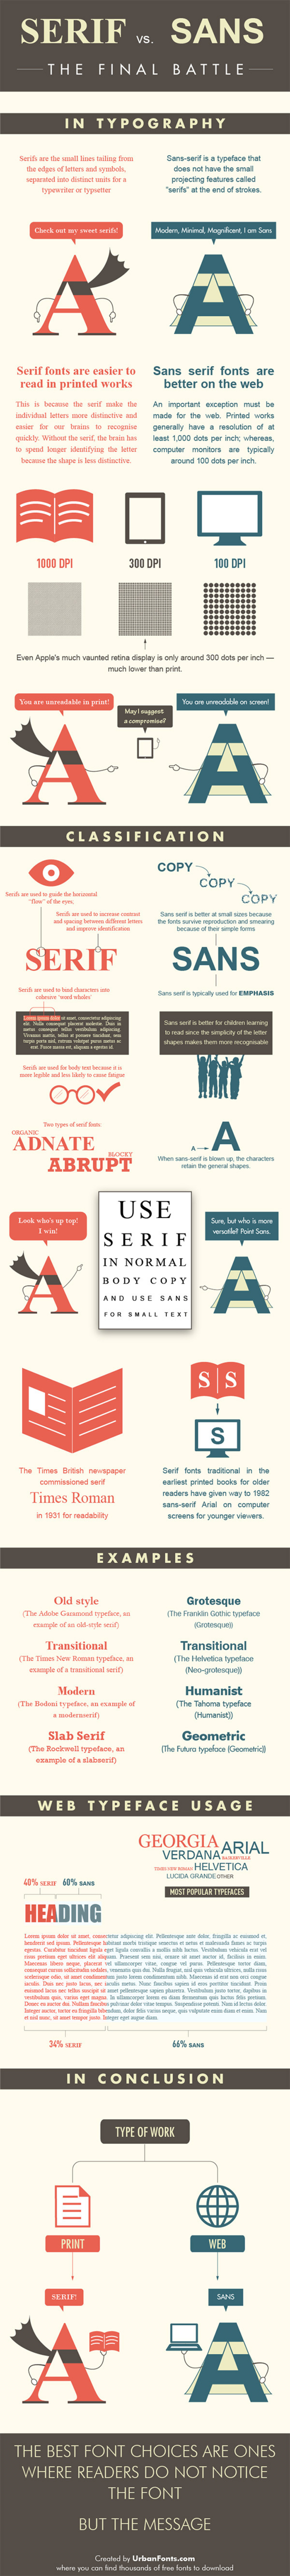 Serif vs Sans: The Final Battle In Typography [Infographic] | WebsiteDesign | Scoop.it